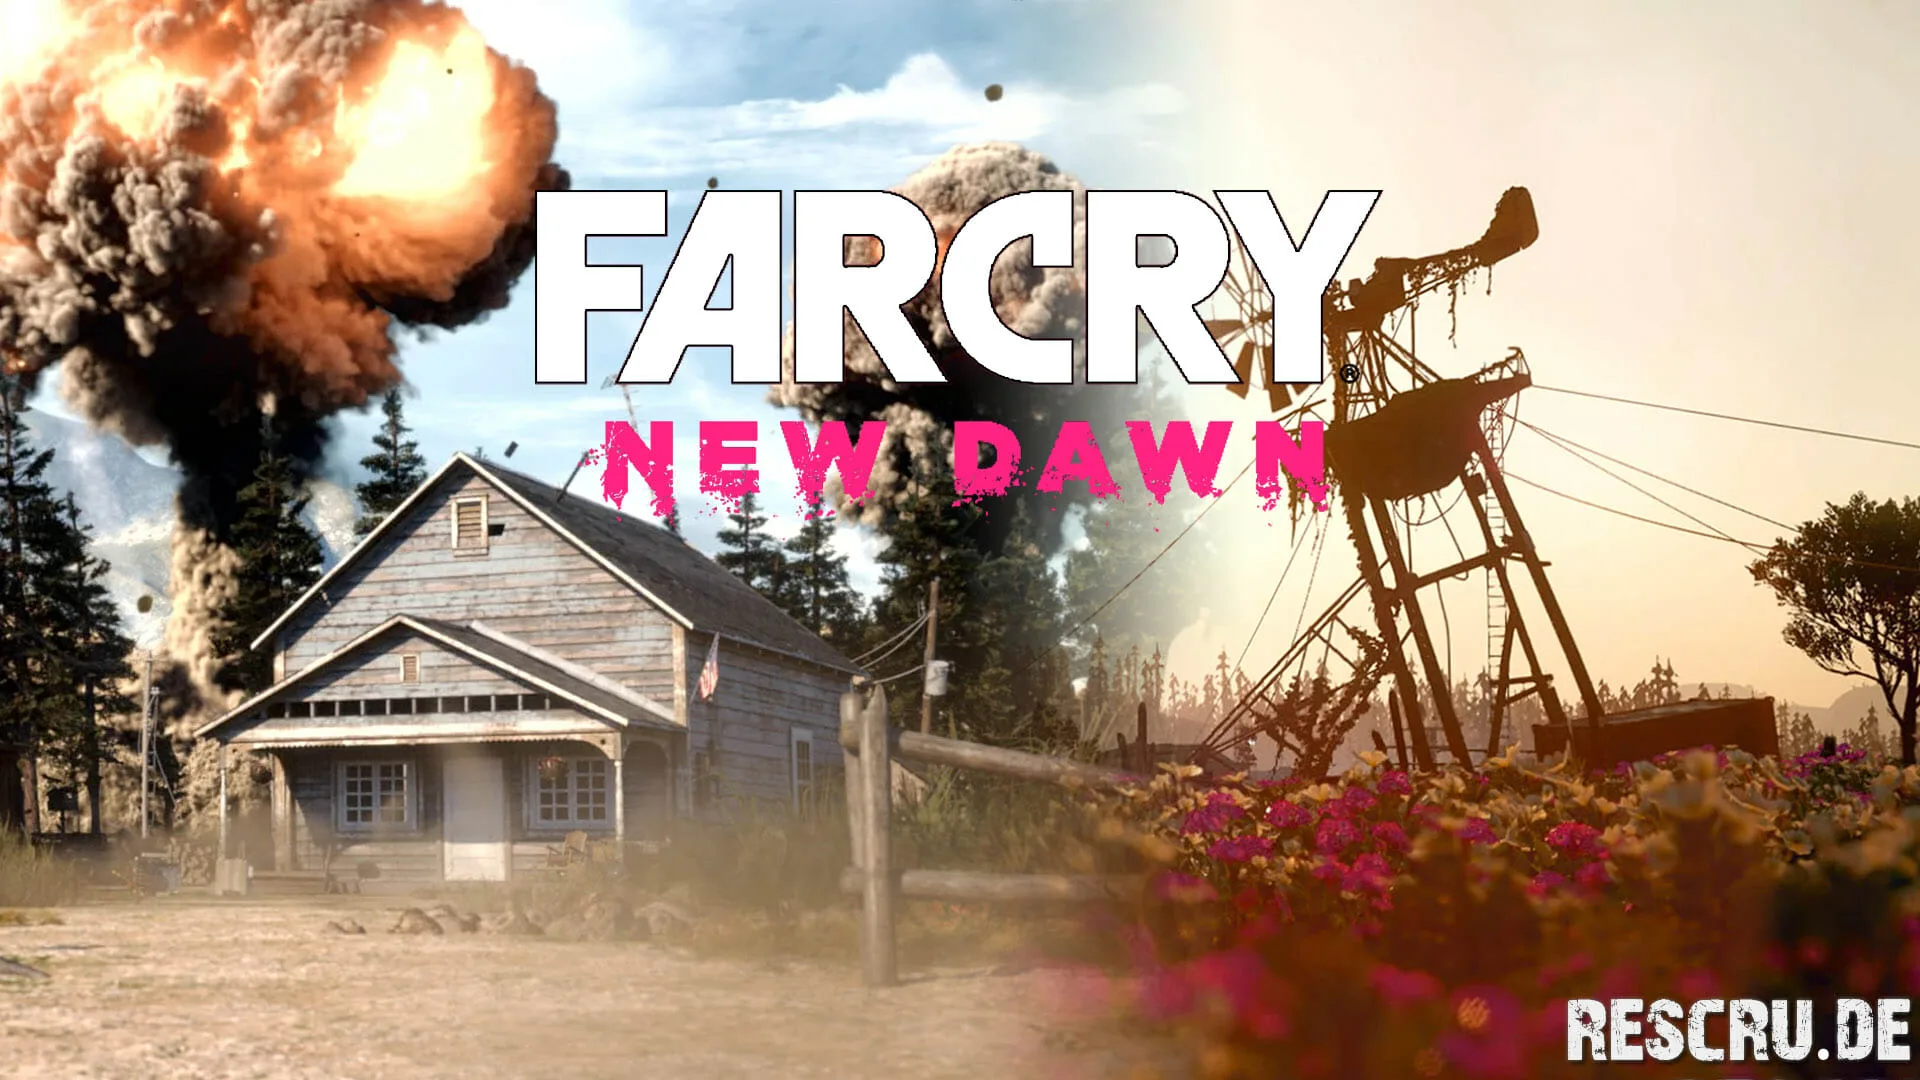 FarCry New Dawn Title